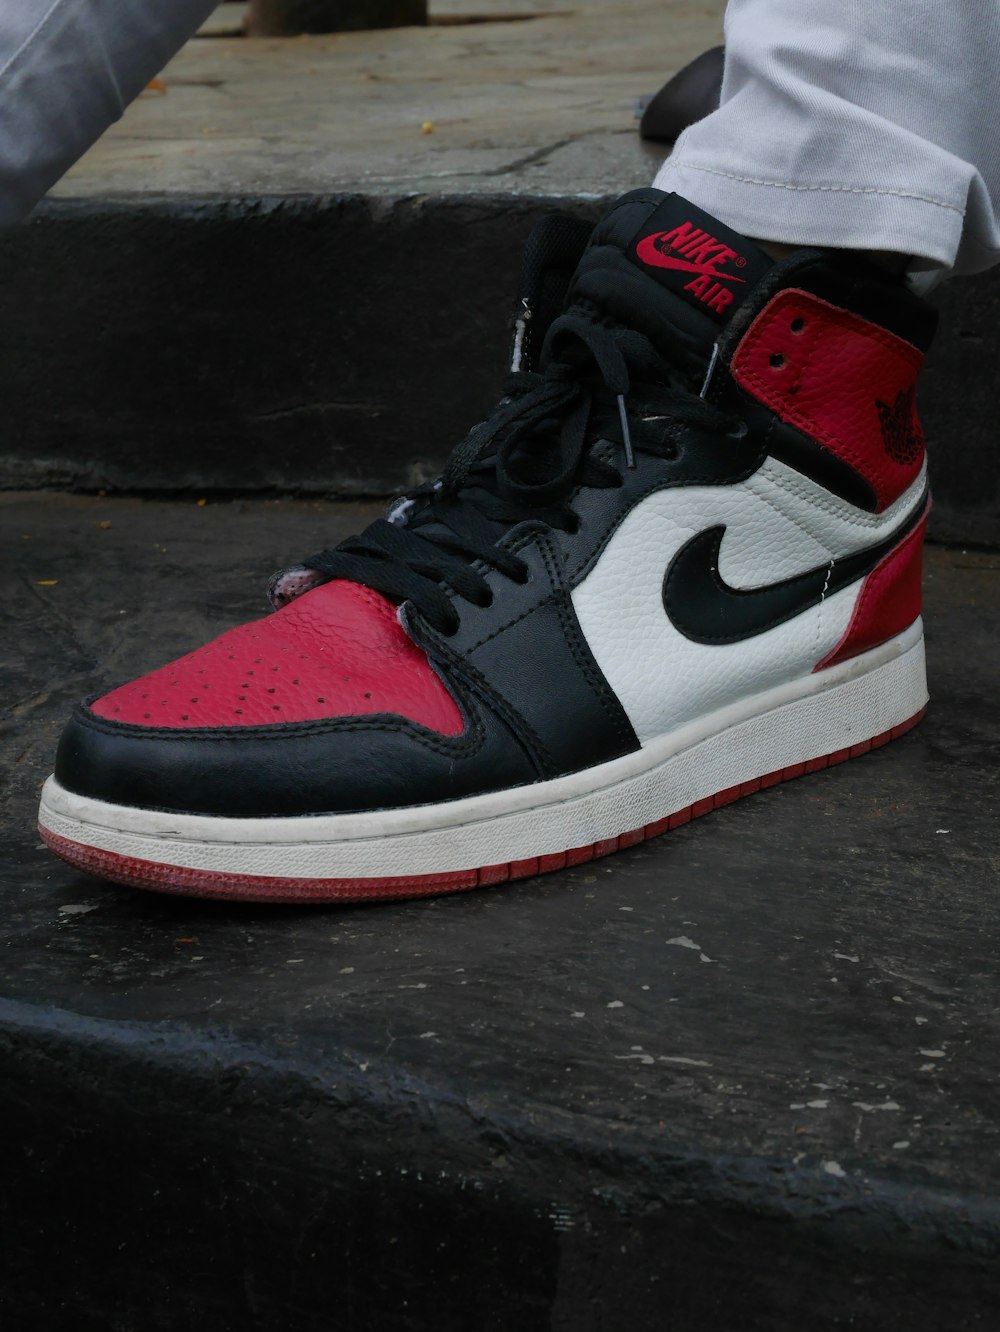 black white and red nike air jordan 1 shoe photo – Free Brown Image on  Unsplash